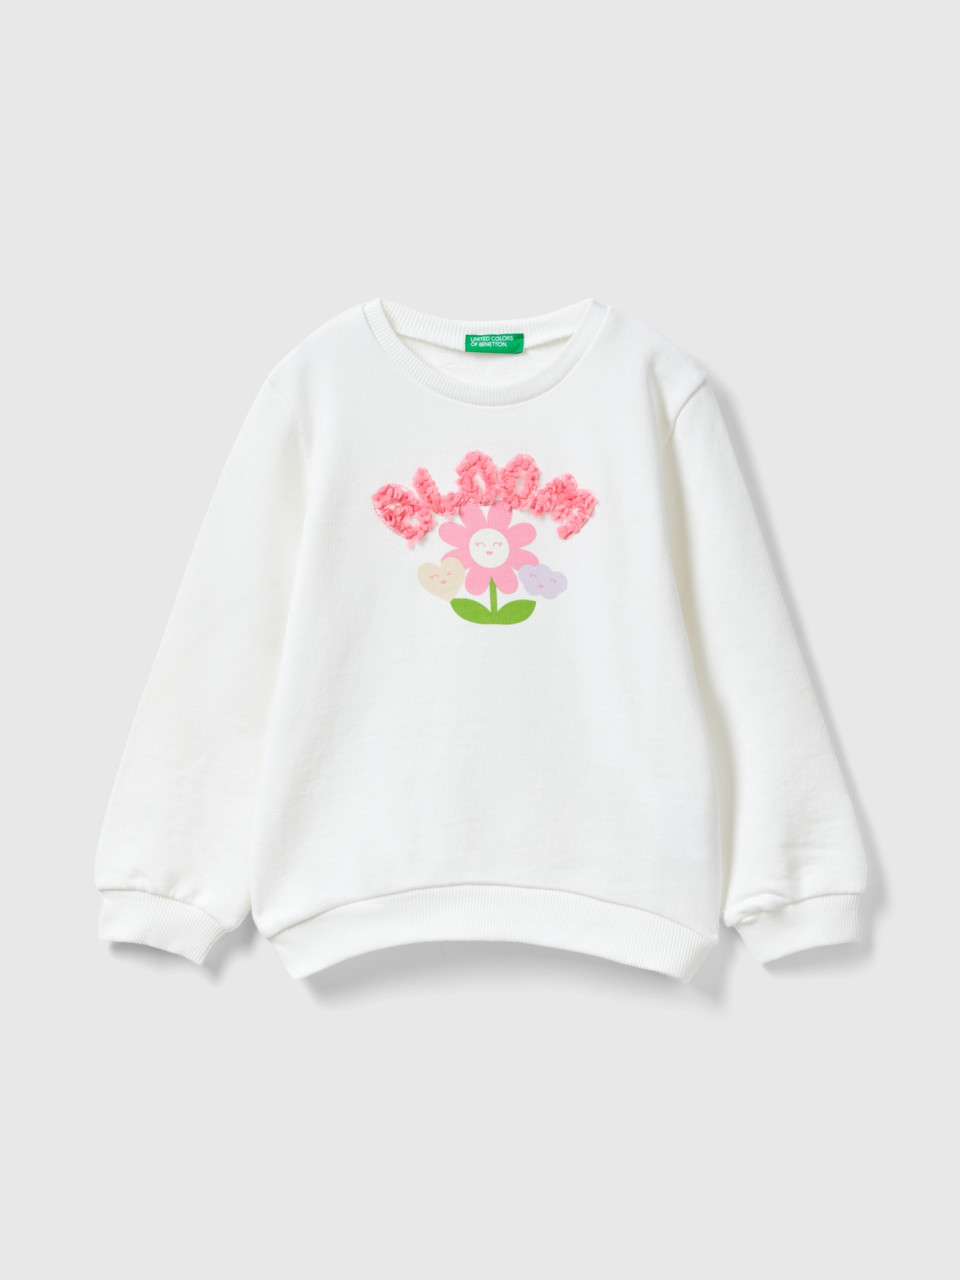 Benetton, Sweater Mit Applikationen Mit Blütenblatteffekt, Weiss, female